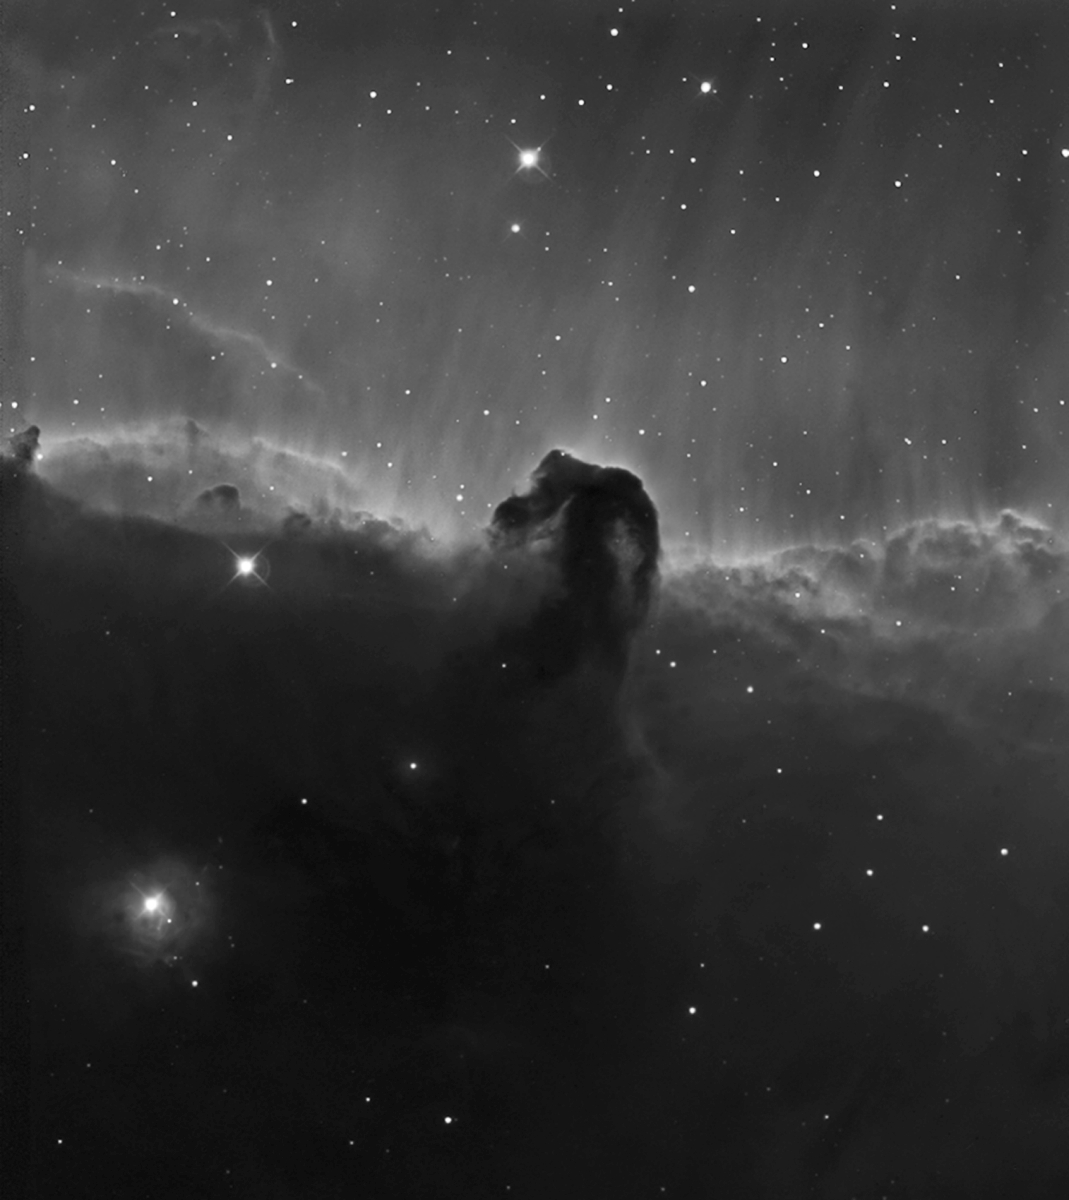 Horsehead Nebula in H-alpha